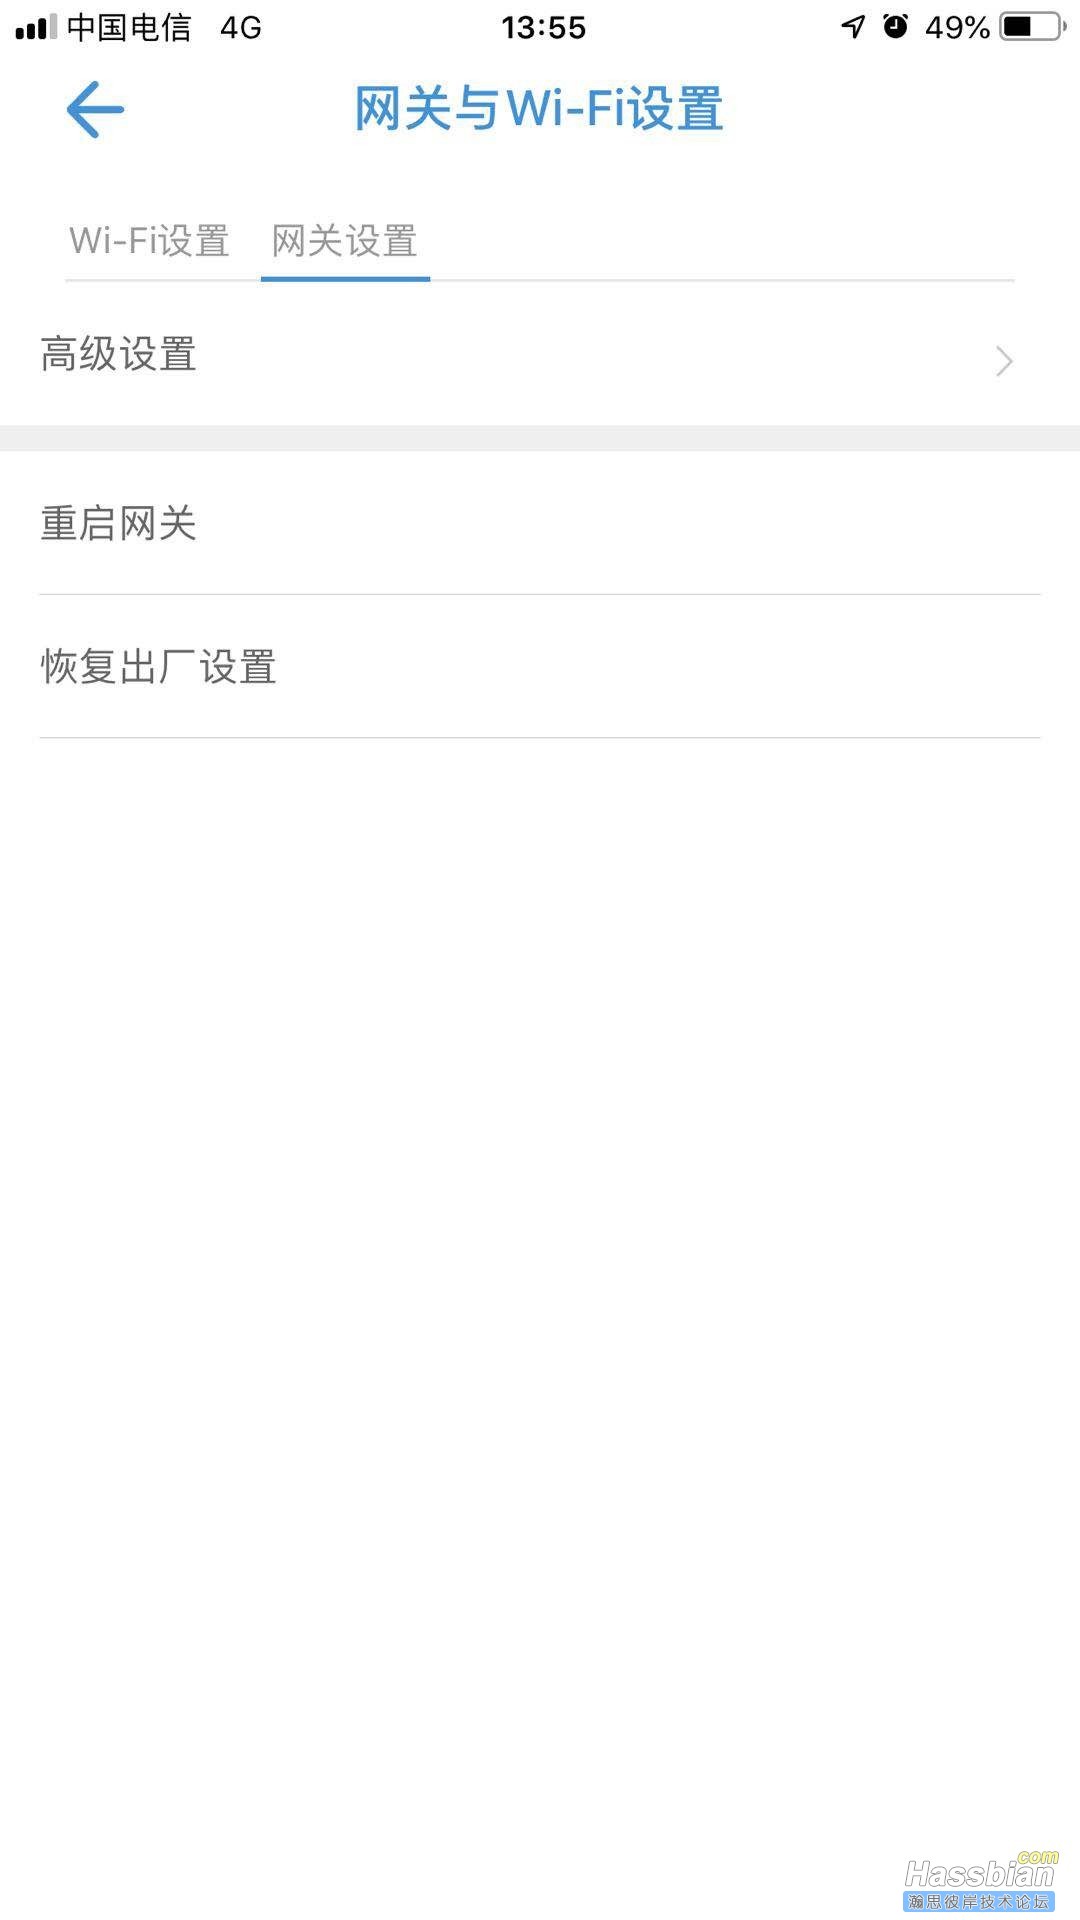 WeChat Image_20181015135622.jpg